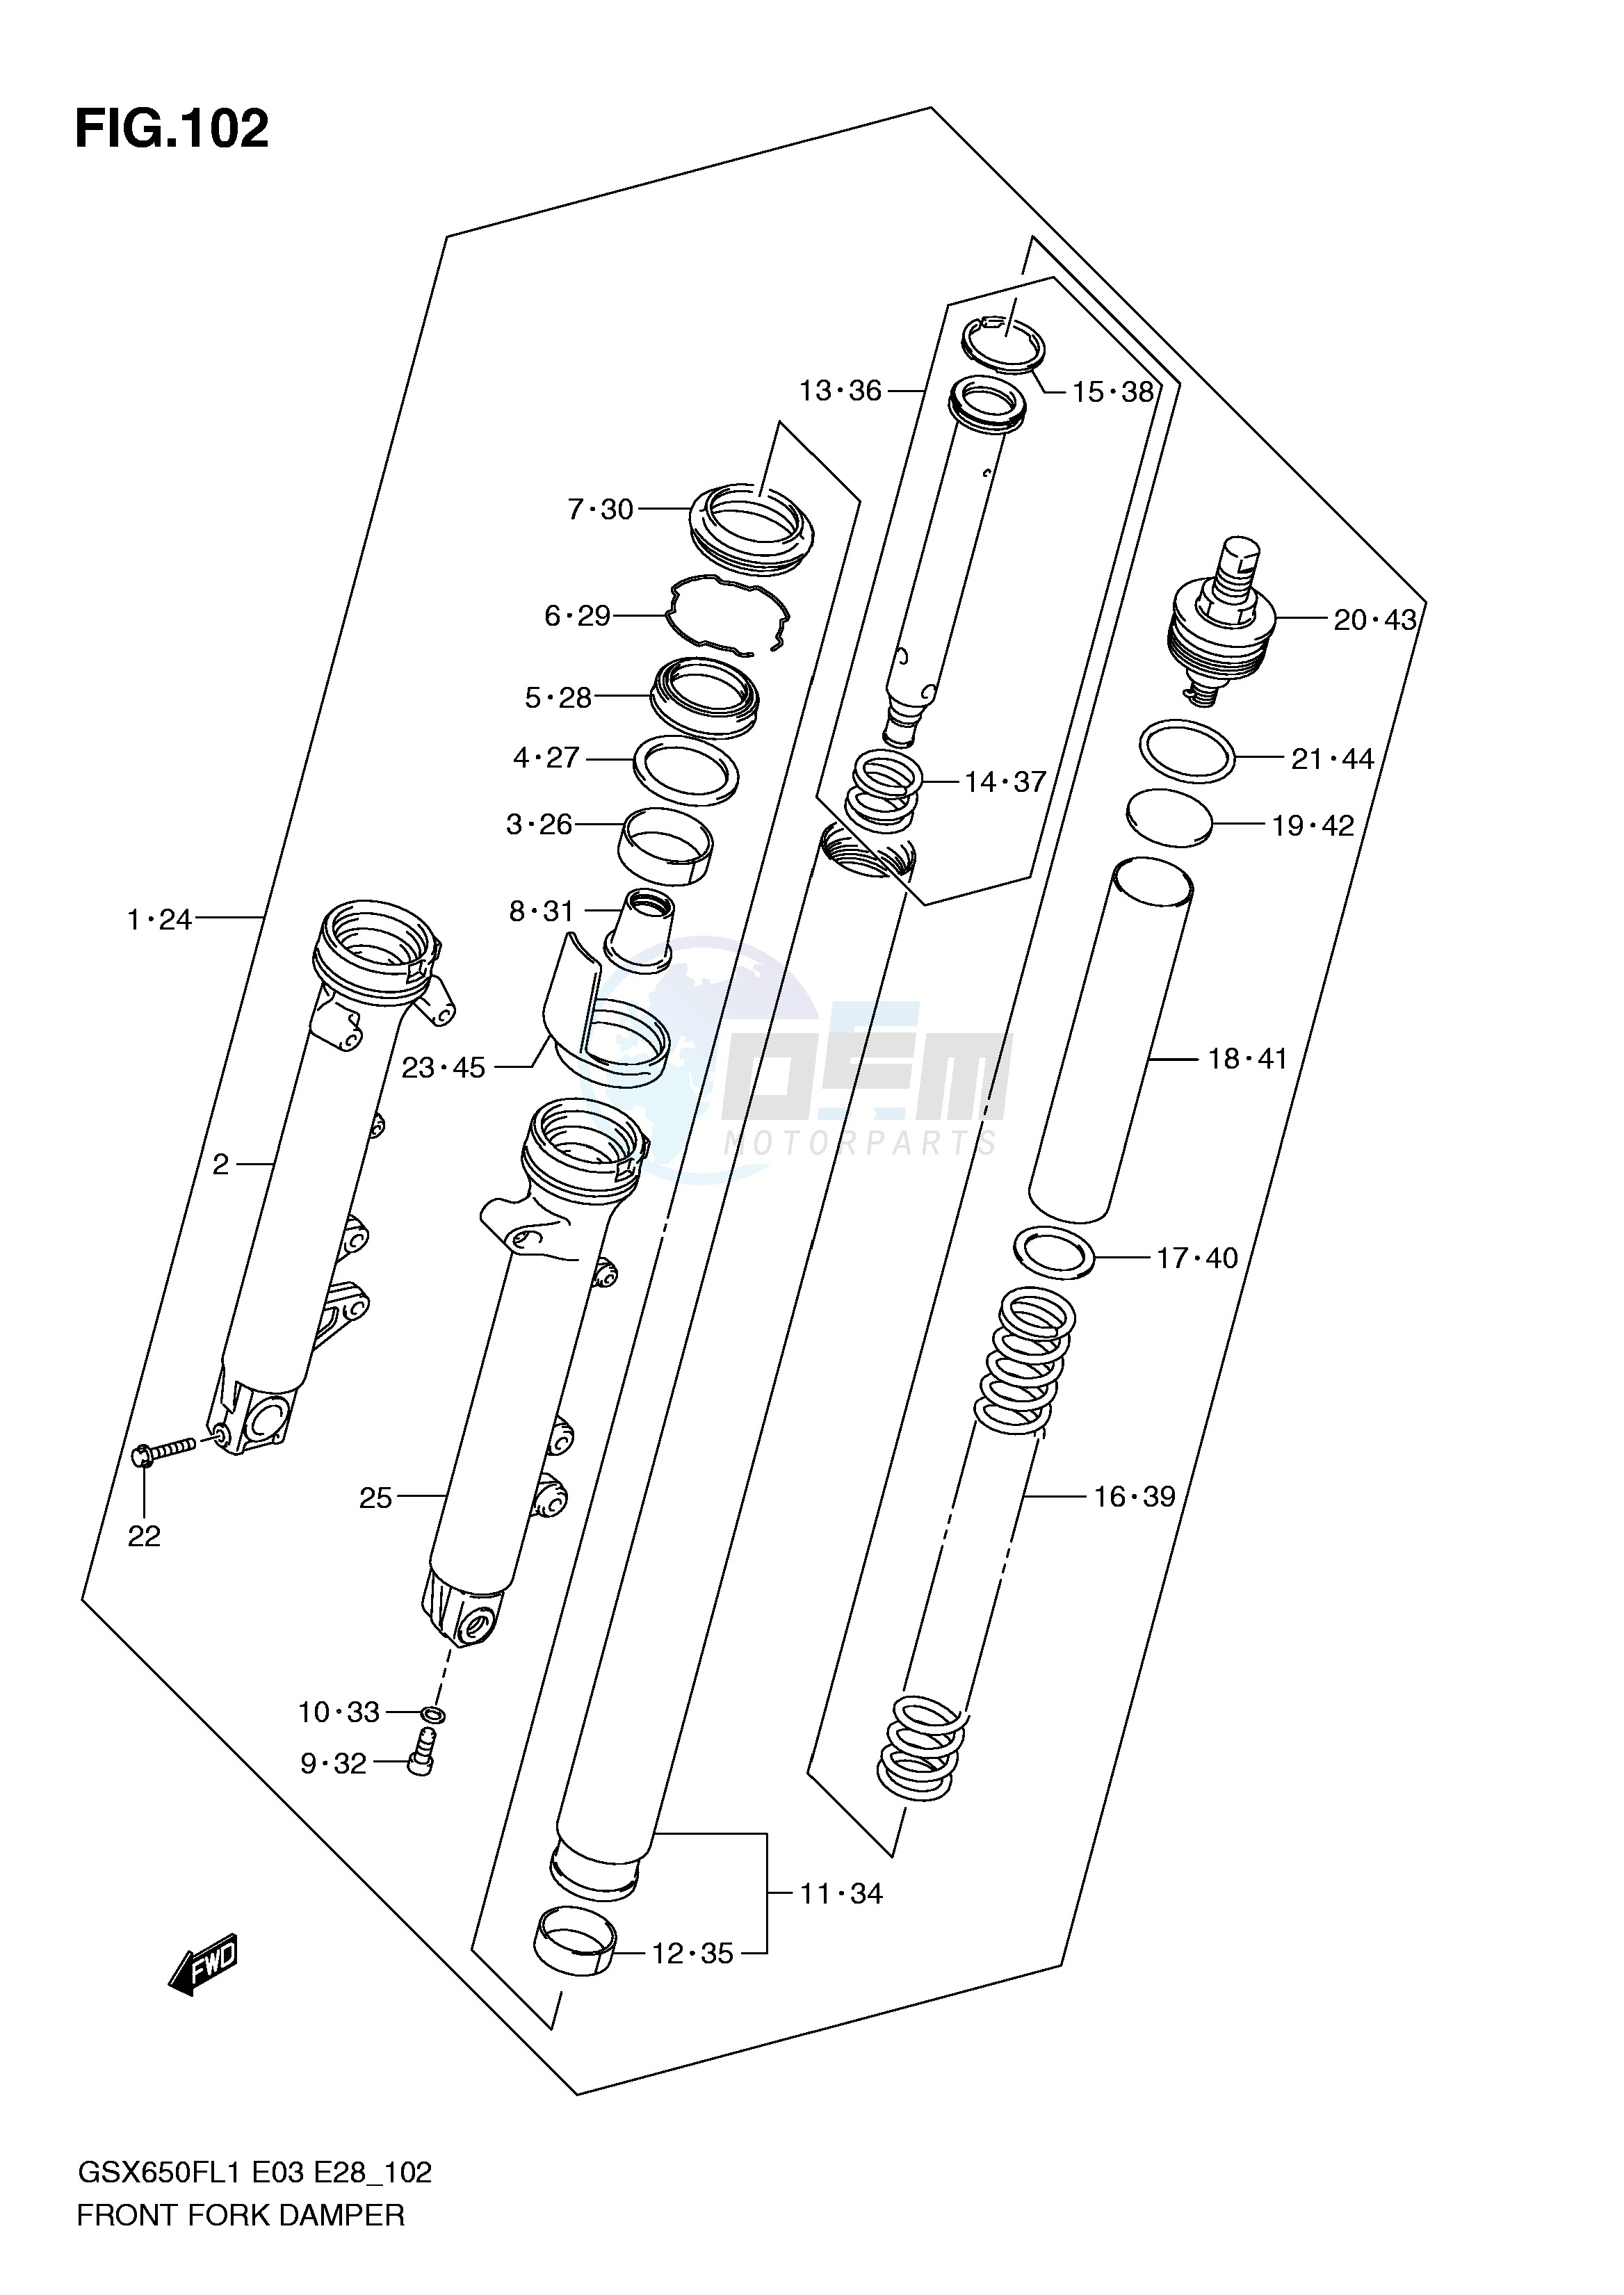 FRONT FORK DAMPER (GSX650FL1 E33) blueprint